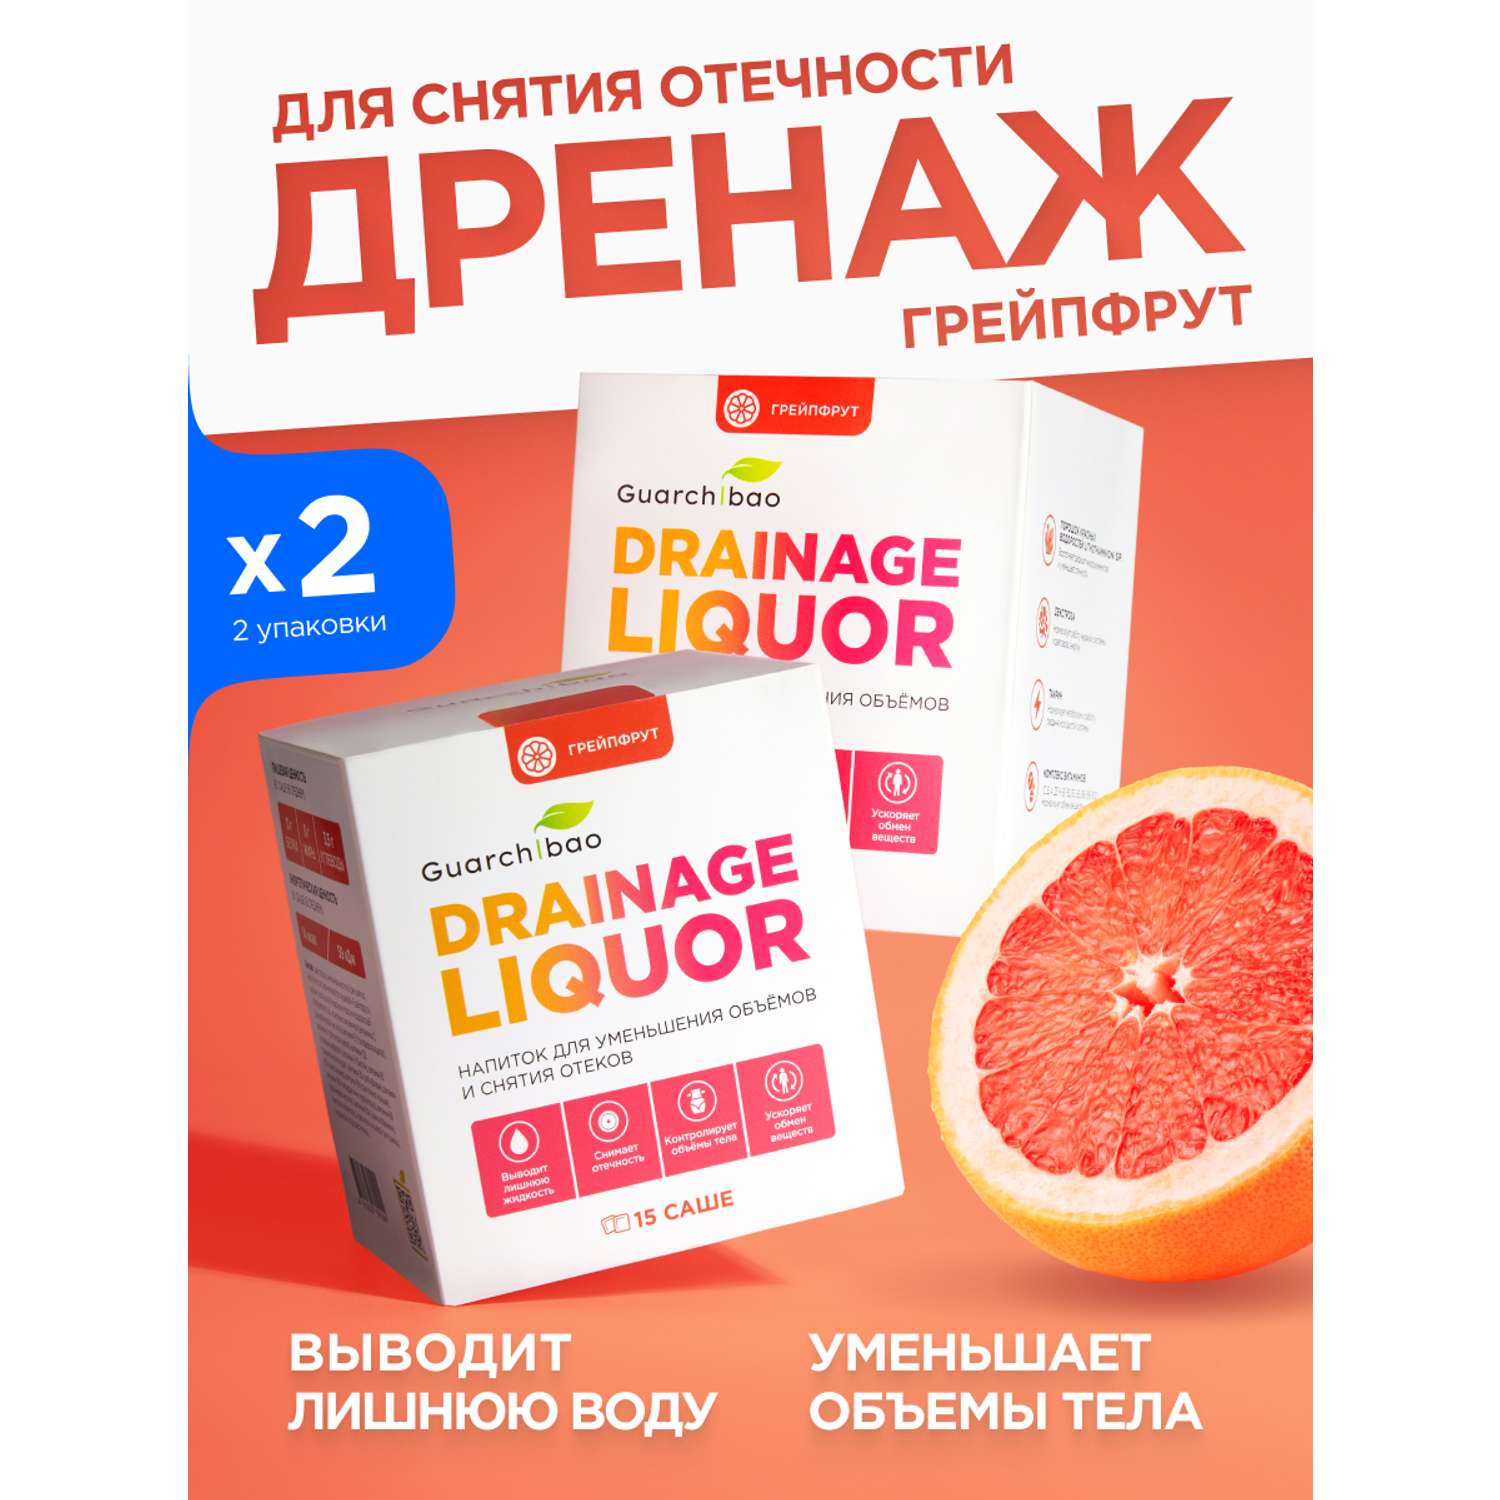 Дренажный напиток Guarchibao со вкусом Грейпфрута для похудения очищения организма и снятия отечности 2 упаковки - фото 1